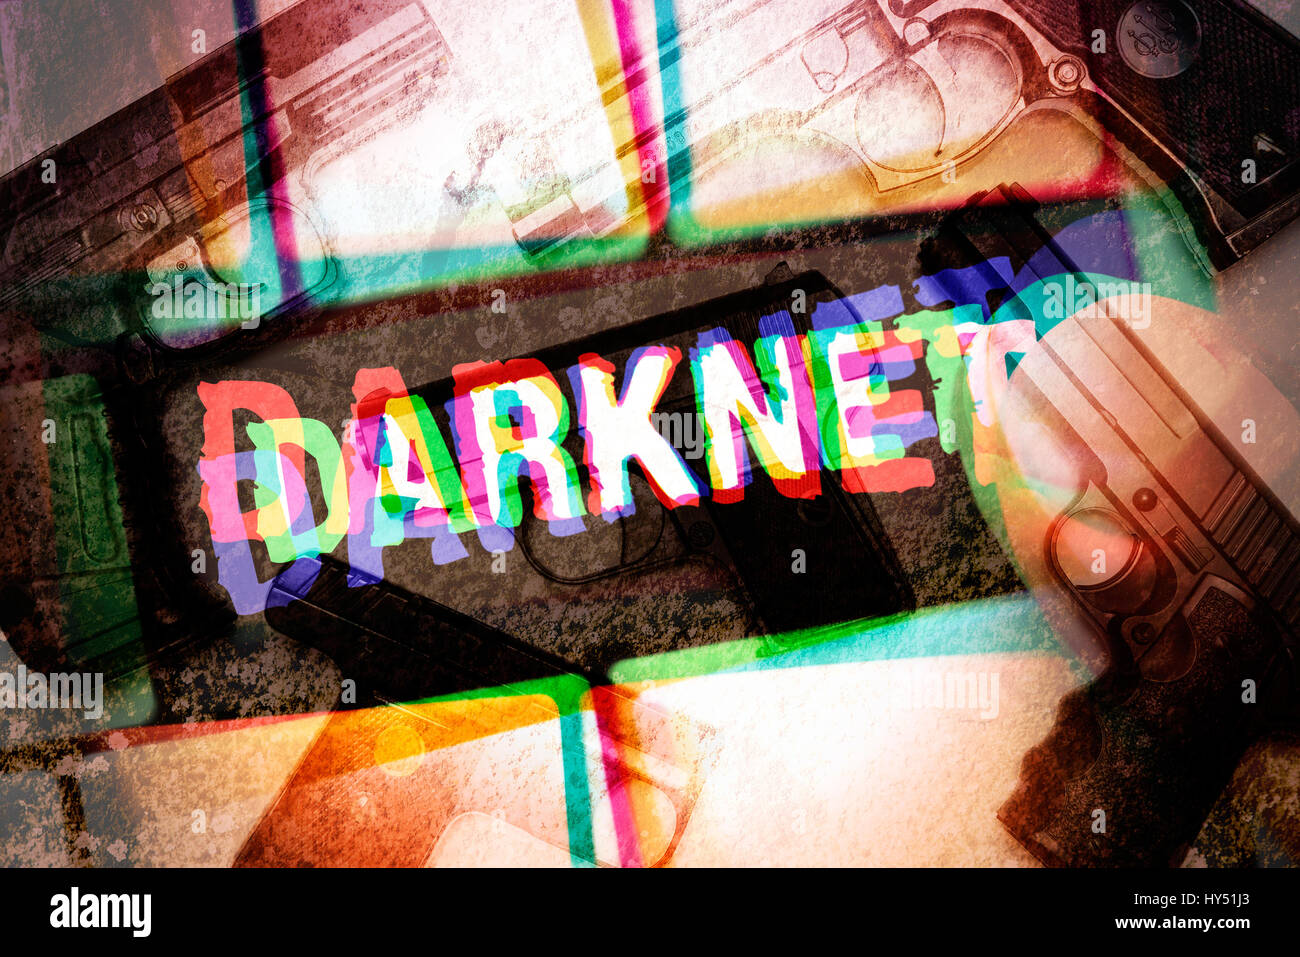 Chiave del computer con l'etichetta Darknet e armi portatili, arma di acquisto nelle Darknet, Computertaste mit der Aufschrift Darknet und Handfeuerwaffe Foto Stock